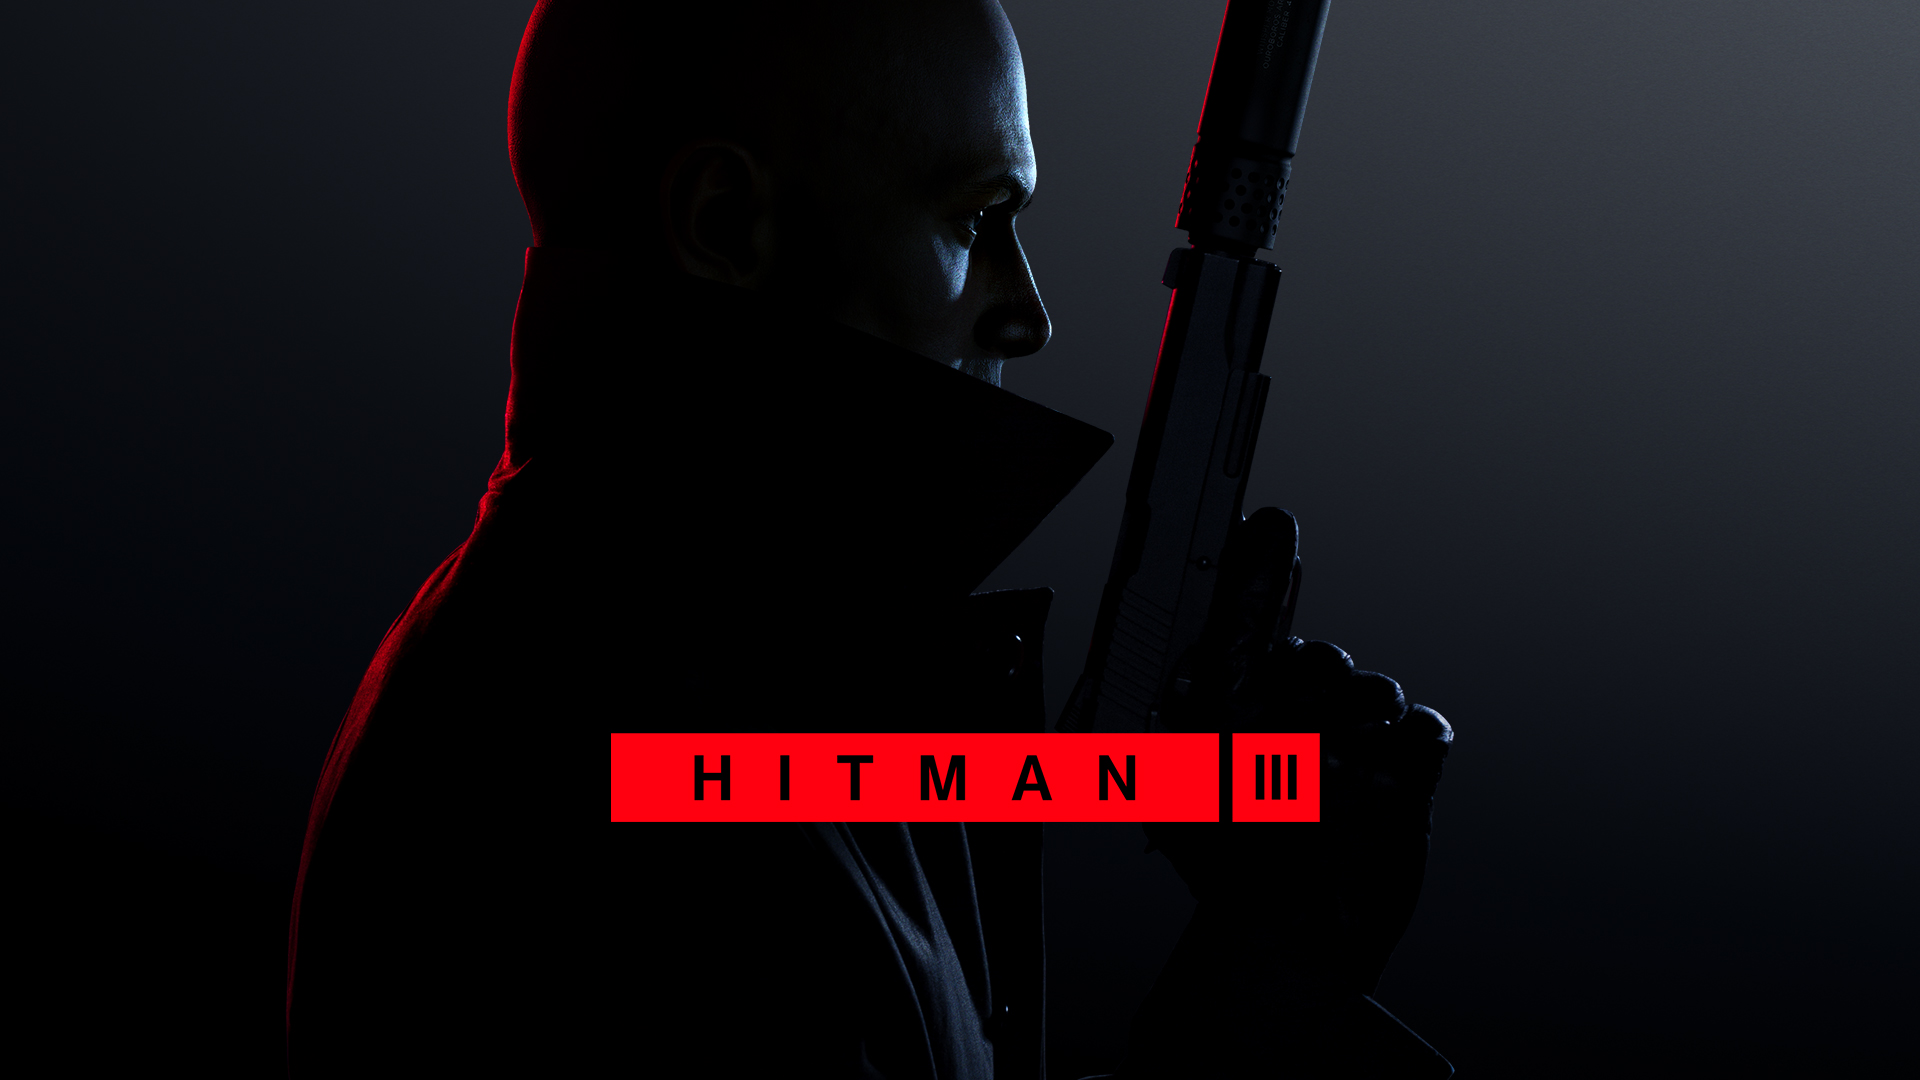 Hitman 3 では、無料 DLC を含む最初の新しいマップがリリースされます。